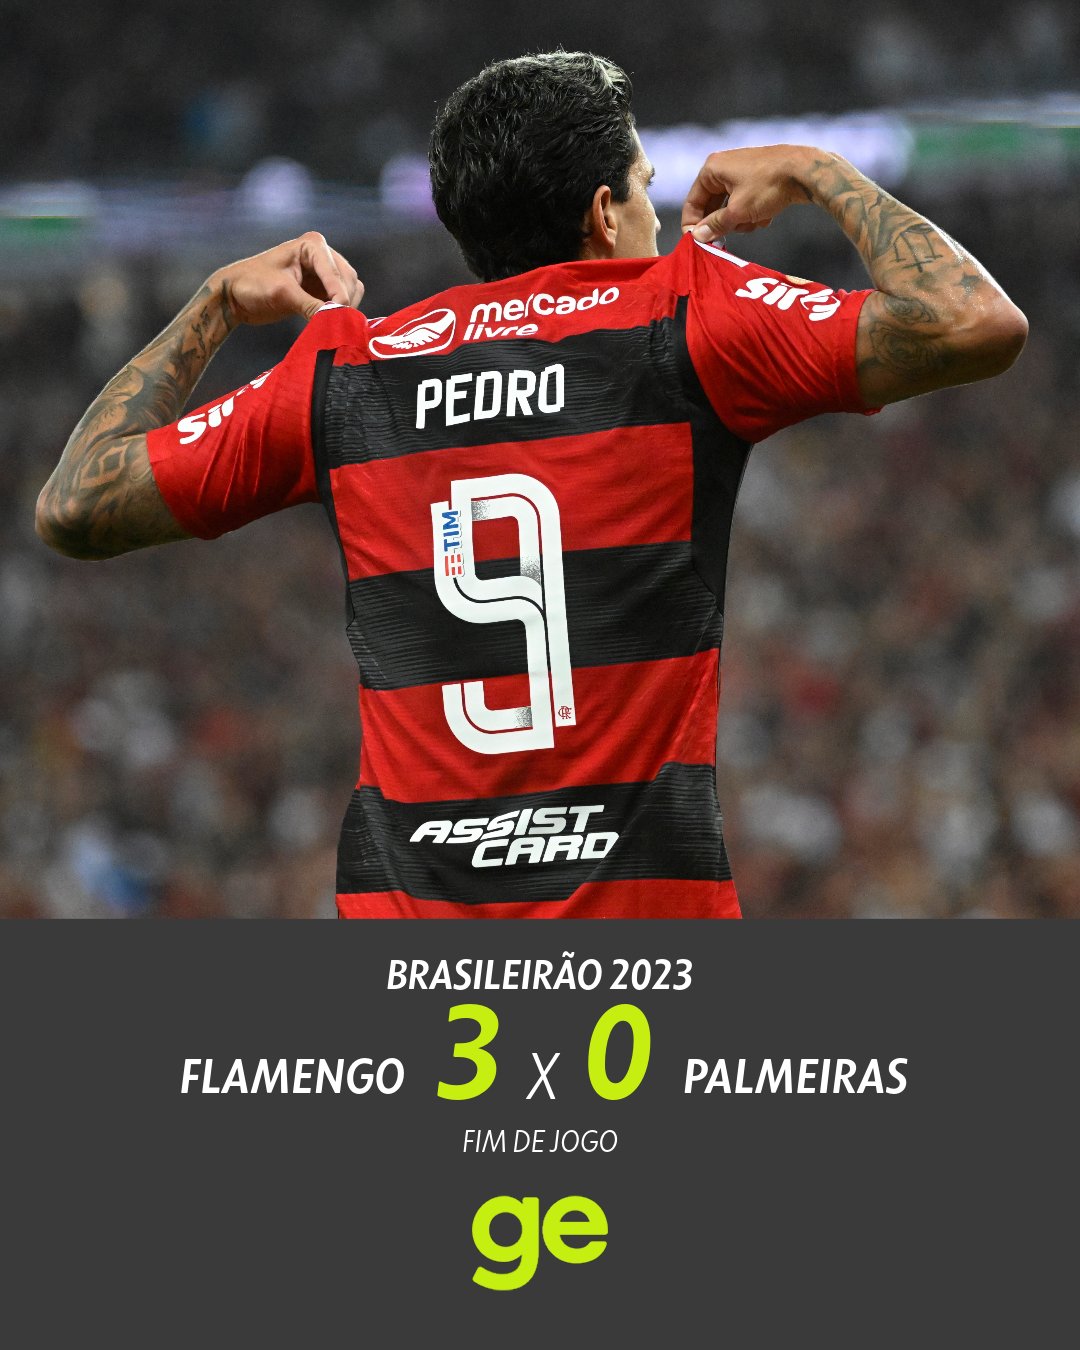 Goleada Info on X: Flamengo soma 29 jogos (123 dias) sem perder: 3x1 GRE  4x1 VAS 2x0 INT 3x0 CEA 1x1 INT 3x0 PAL 3x0 AVA 1x0 SAN 2x1 CRU 3x1 INT